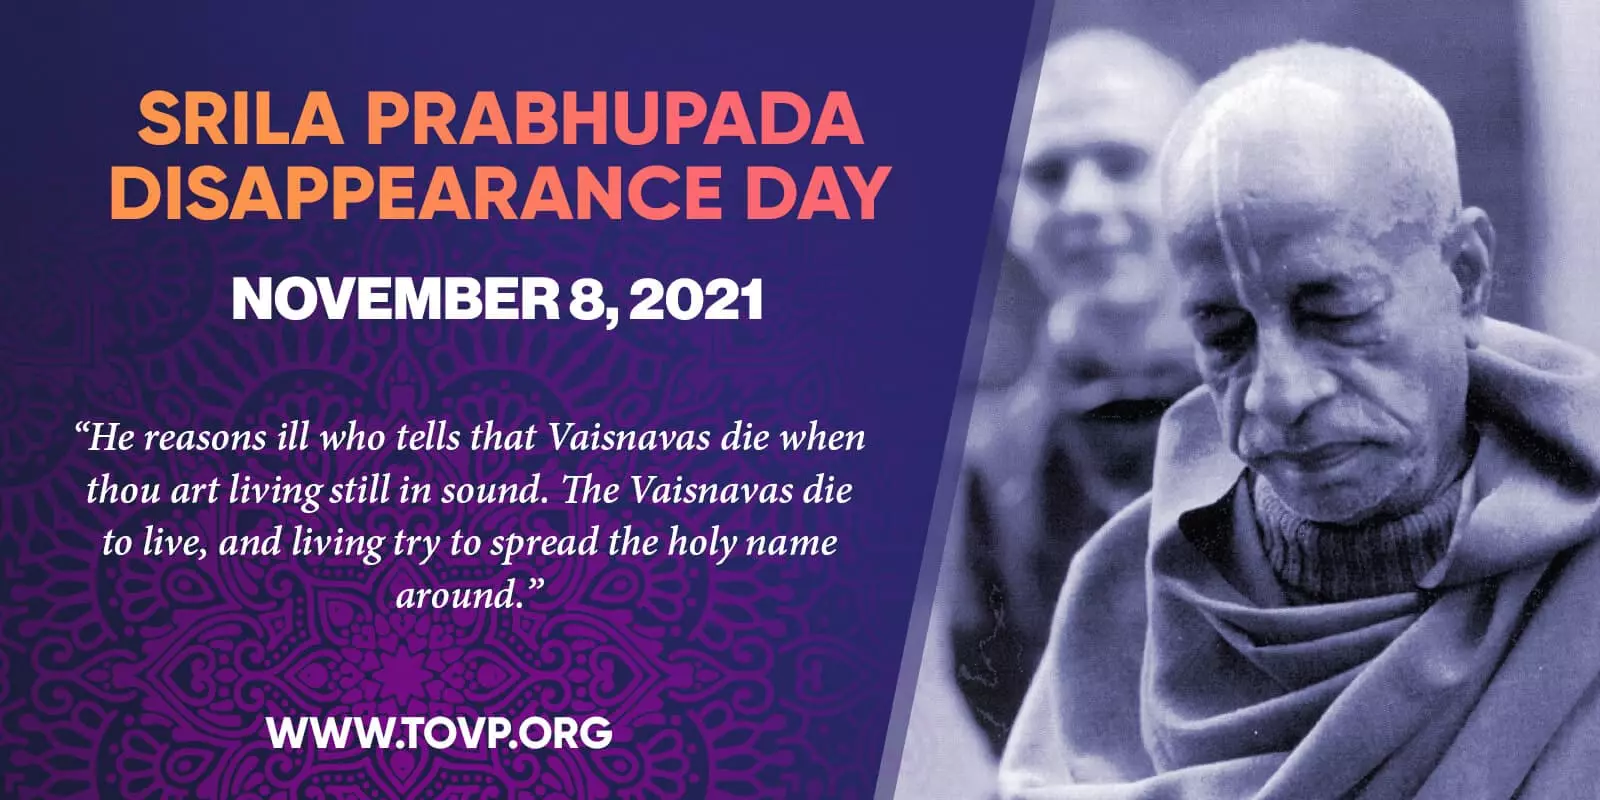 El Día de la Desaparición de Srila Prabhupada y #039; s y el TOVP